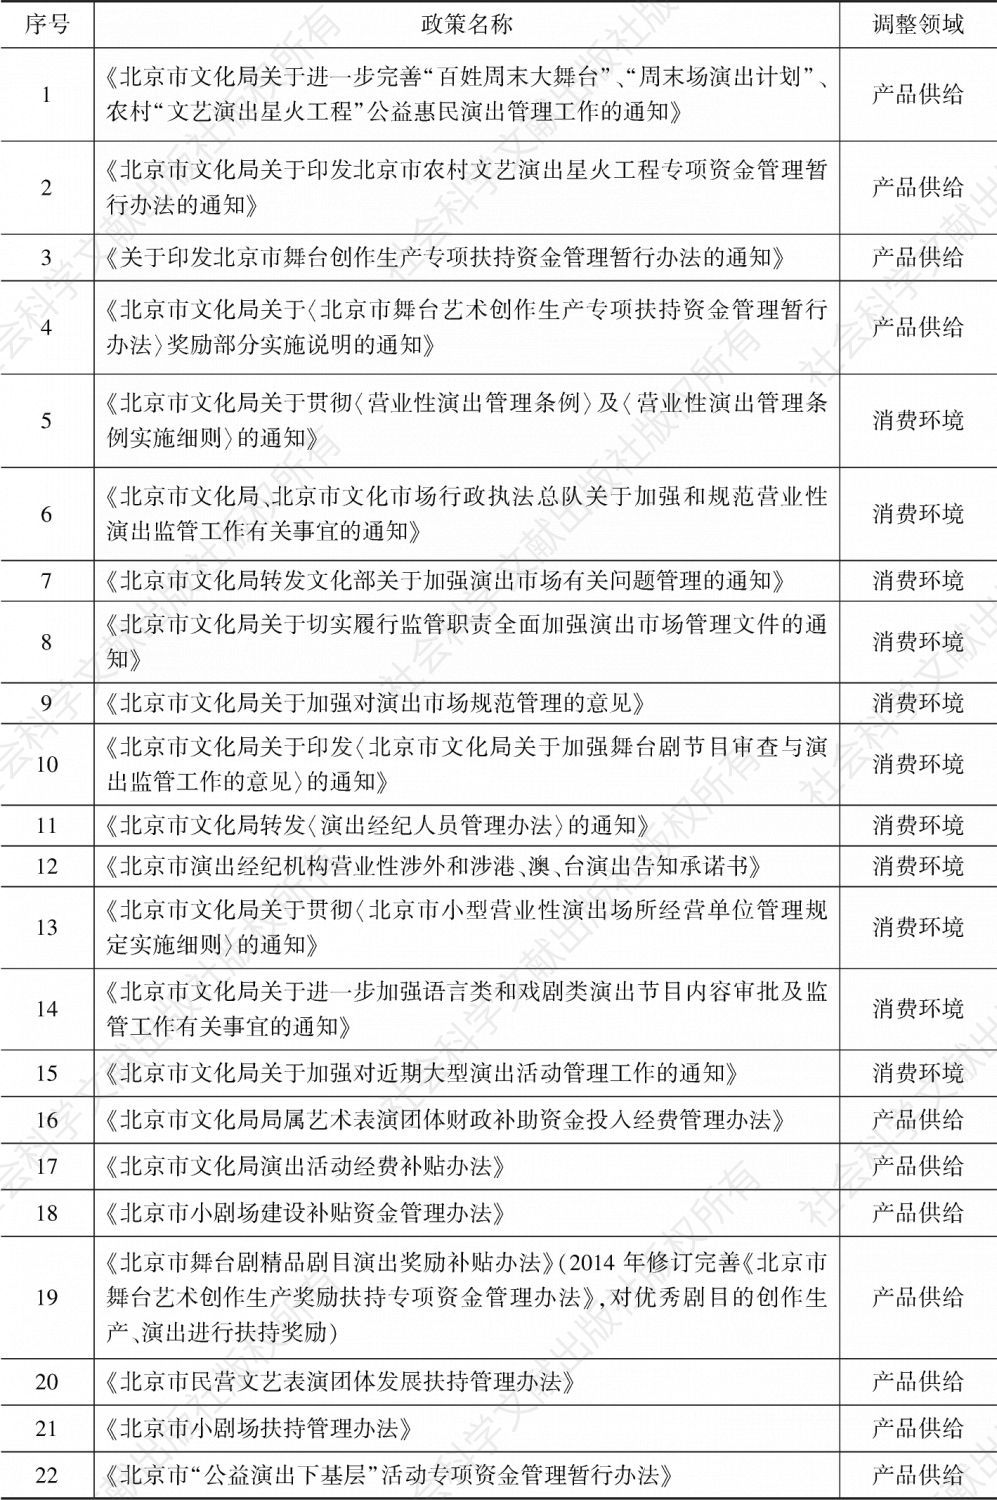 表2-2 北京市文化消费政策中有关演艺业的政策文件